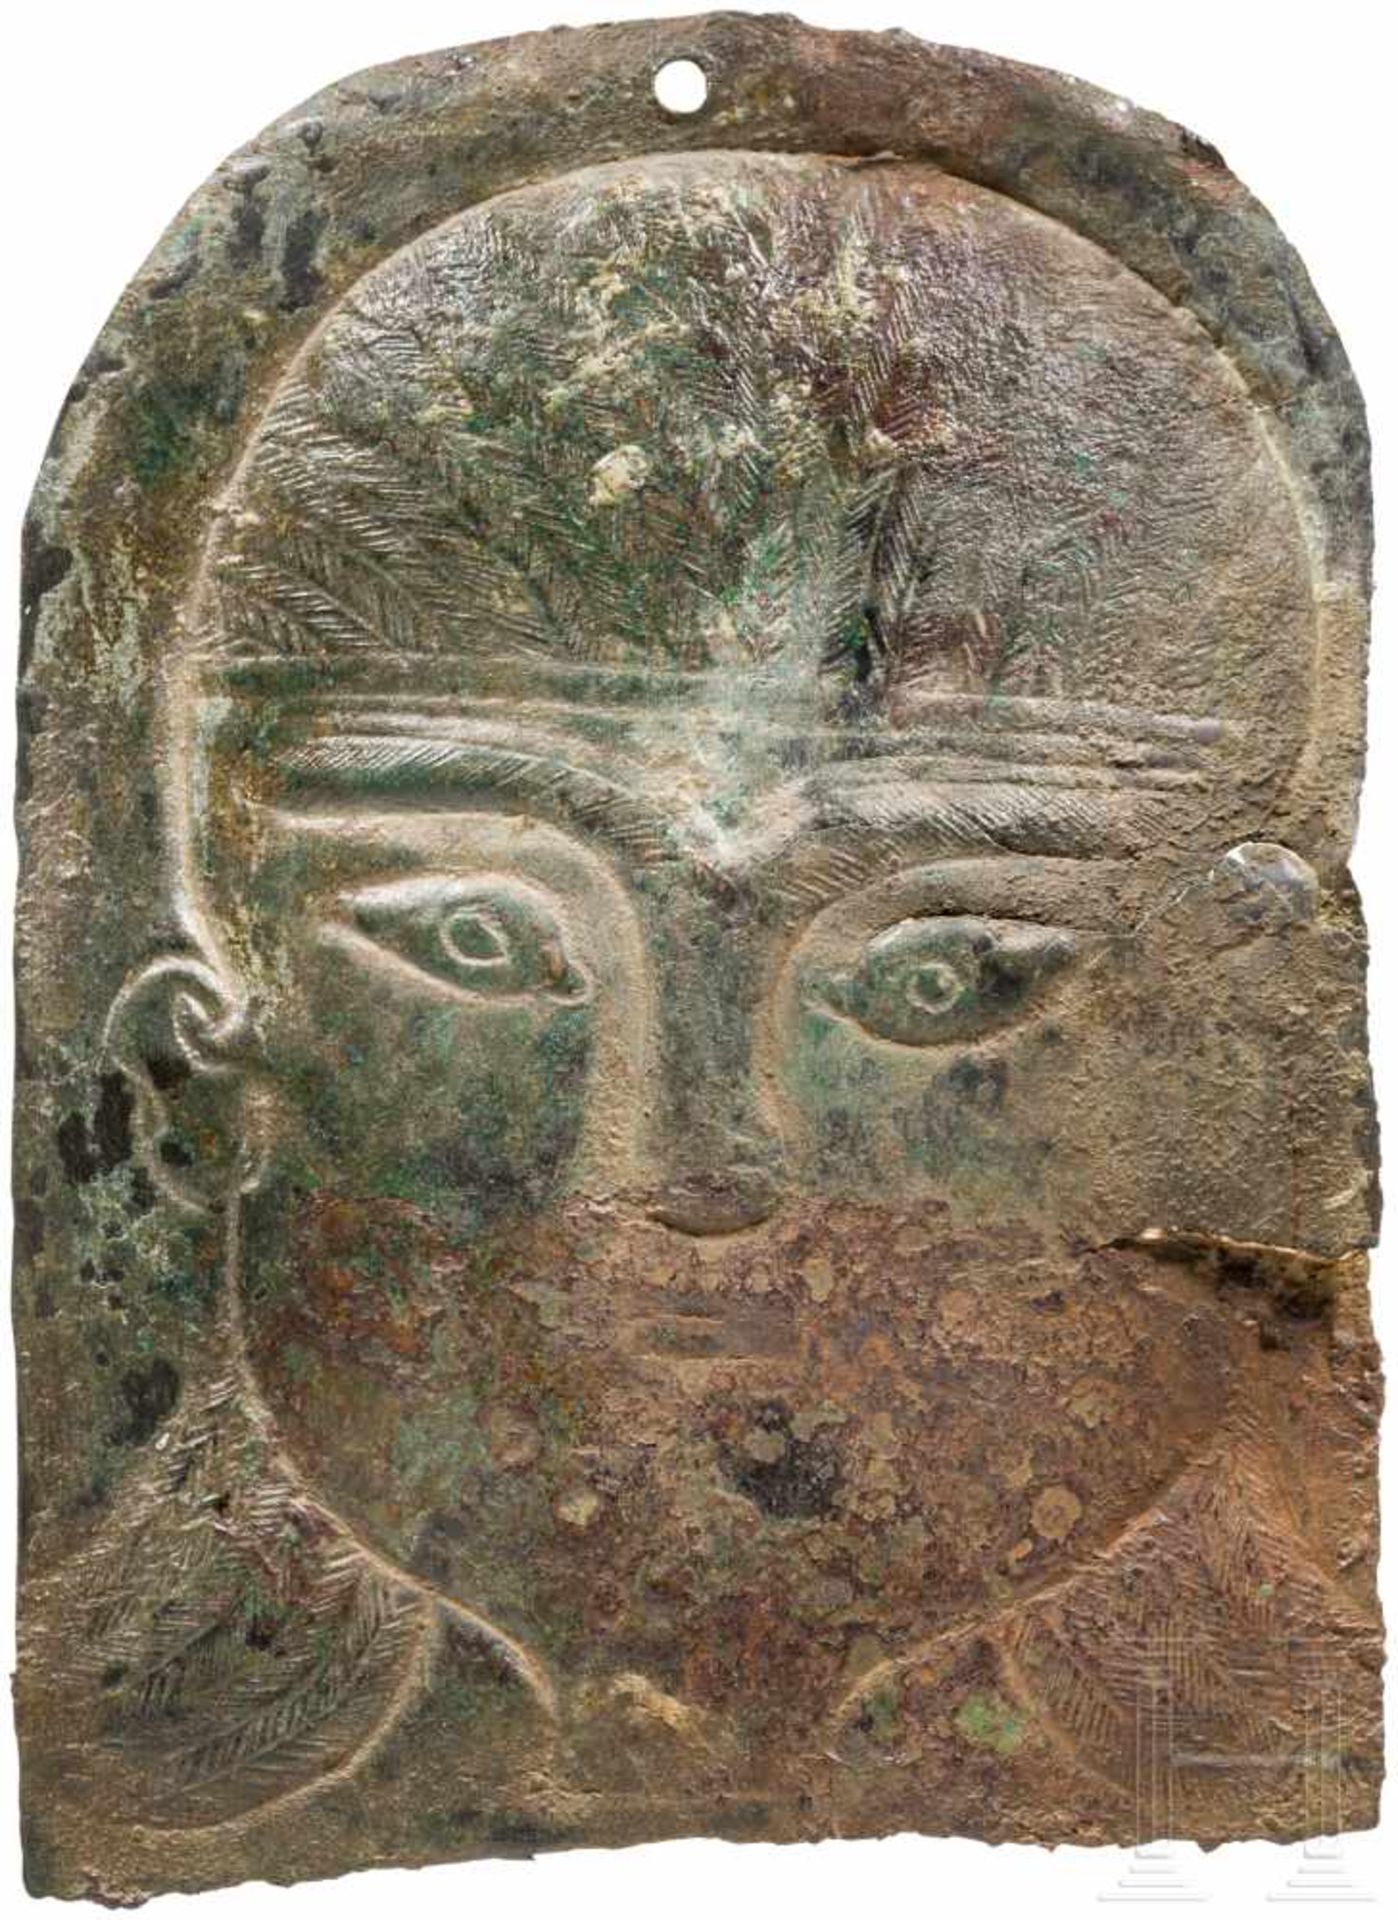 Fein ziseliertes Votivblech mit Kopf, urartäisch, 8. Jhdt. v. Chr.Bronzeblech mit von hinten